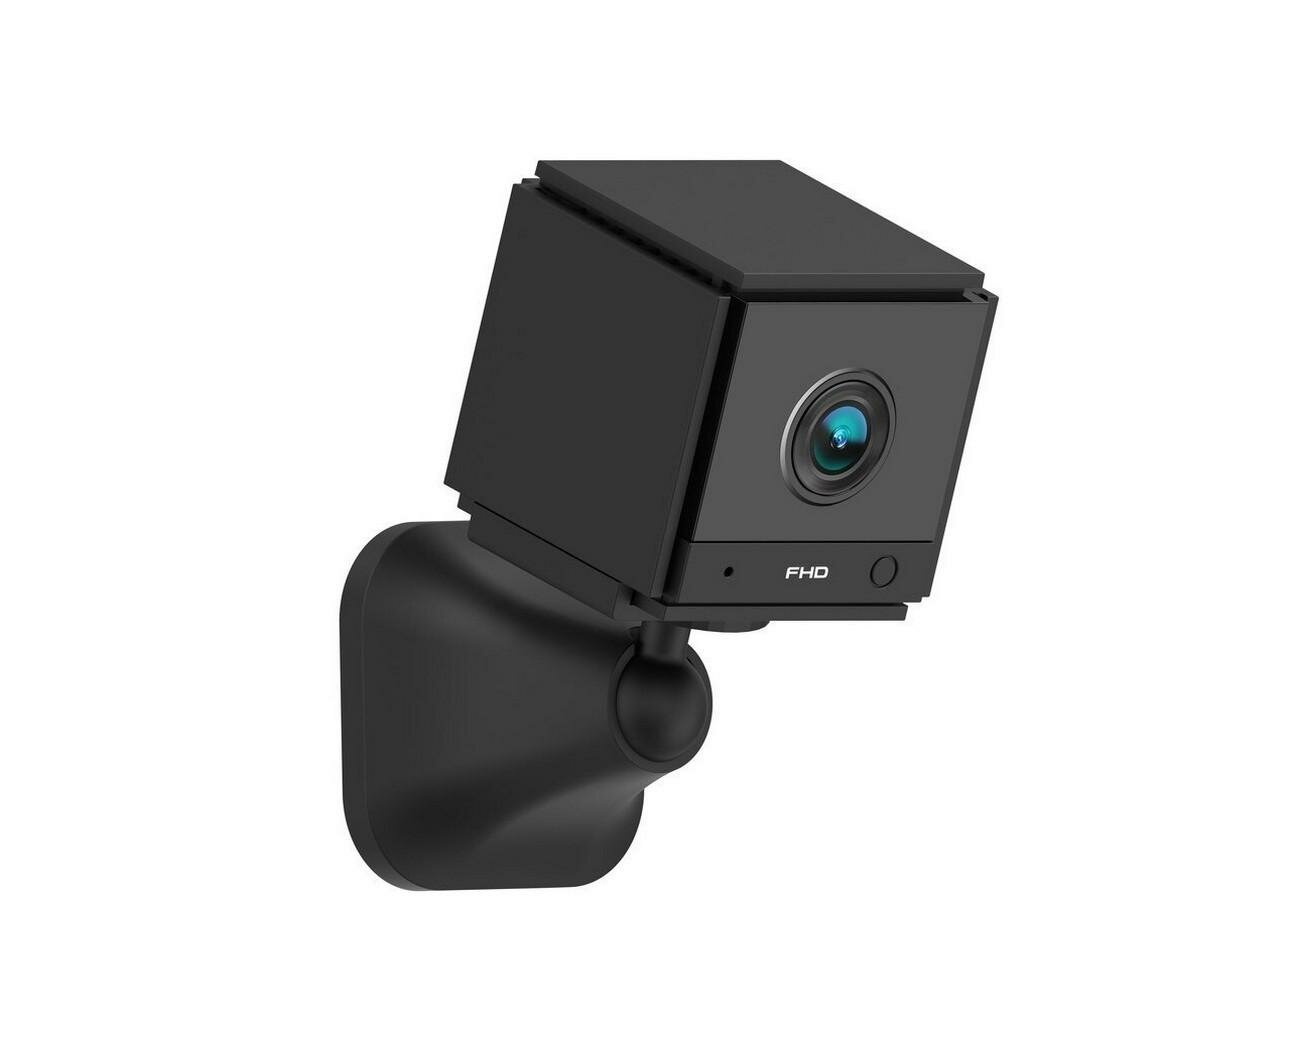 Автономная 2mp маленькая беспроводная Wi-Fi IP видеокамера наблюдения JMC-AC20 (Full HD) (W4765RU) с ИК датчиком движения. Сигнал тревоги.